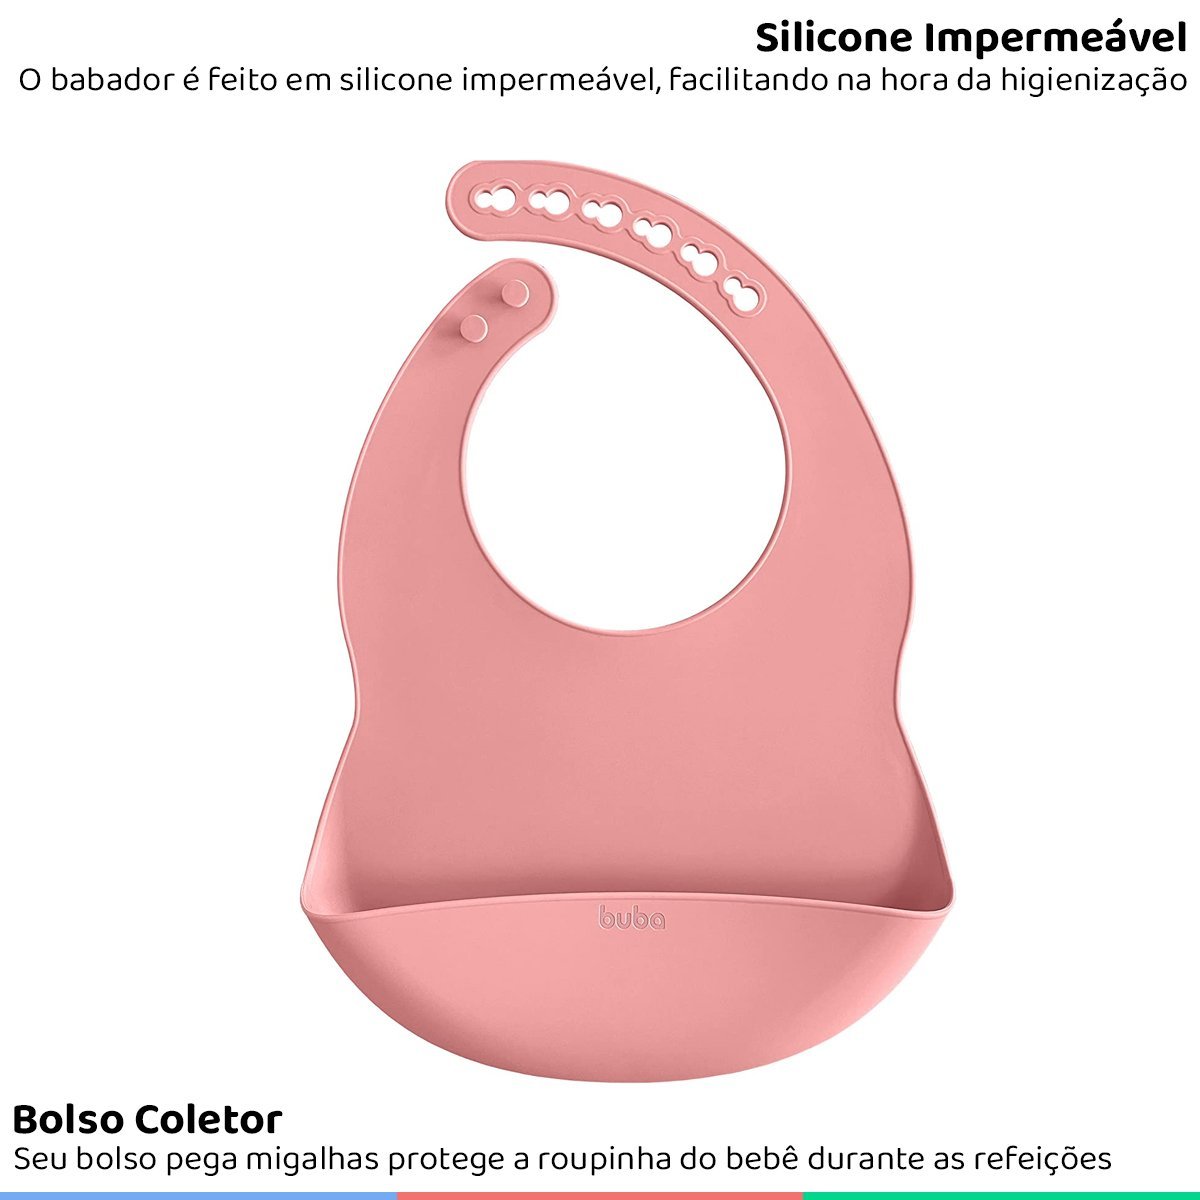 Babador de Silicone Bebe Impermeável Coletor de Migalhas Infantil +3 Meses Botões Ajustável Rosa Bub - 3